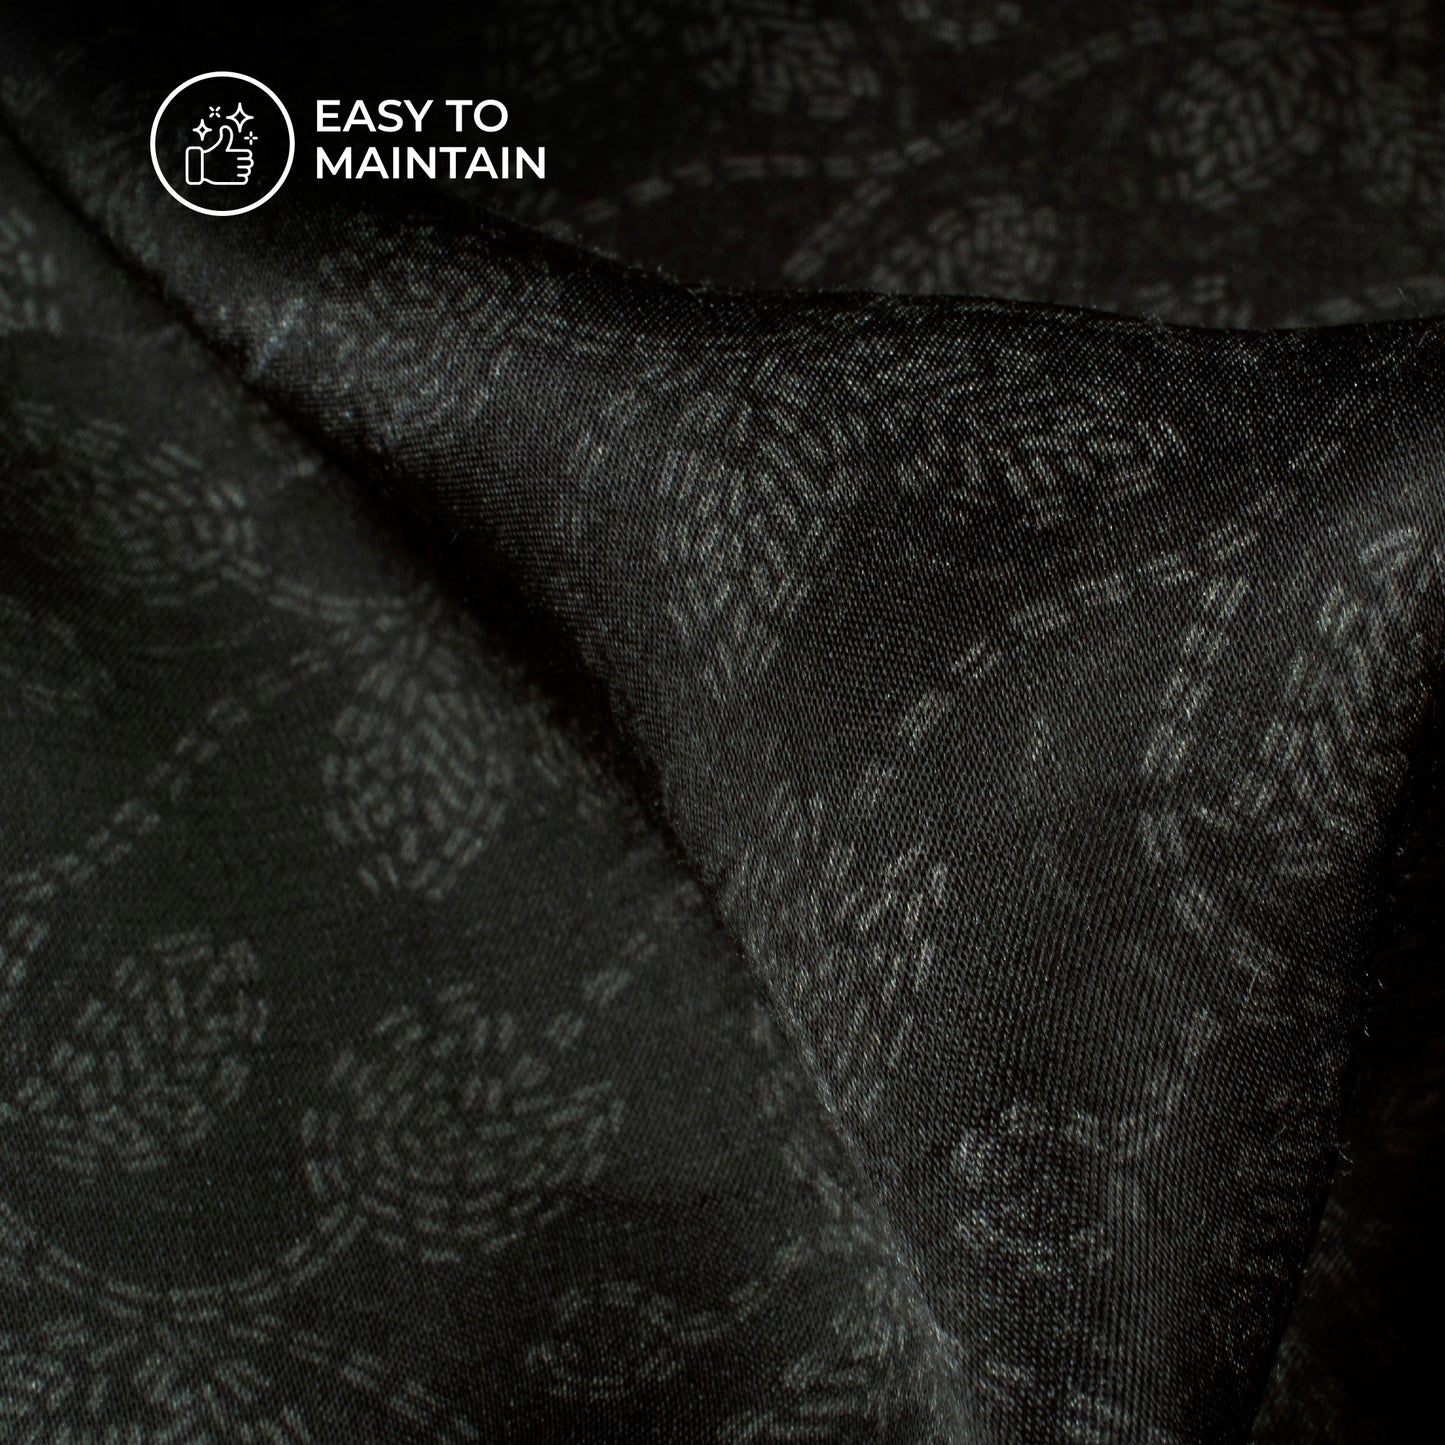 Midnight Black Floral Digital Print Viscose Gaji Silk Fabric